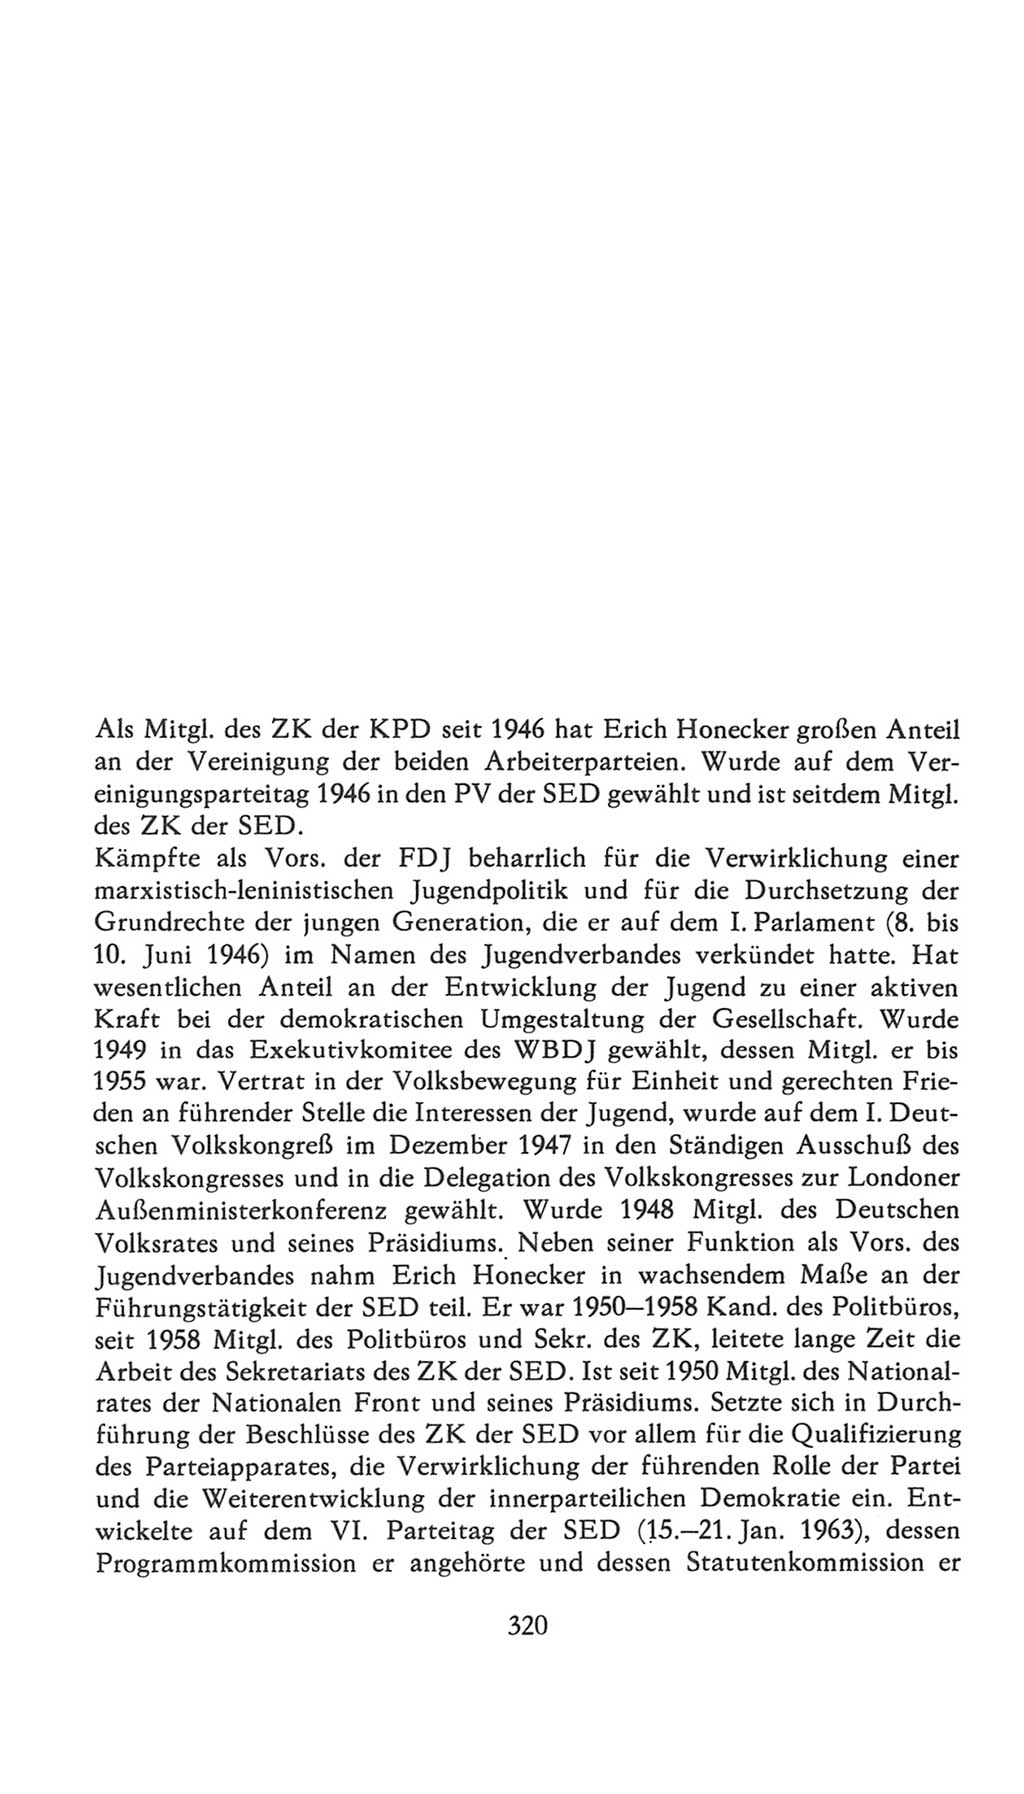 Volkskammer (VK) der Deutschen Demokratischen Republik (DDR), 7. Wahlperiode 1976-1981, Seite 320 (VK. DDR 7. WP. 1976-1981, S. 320)